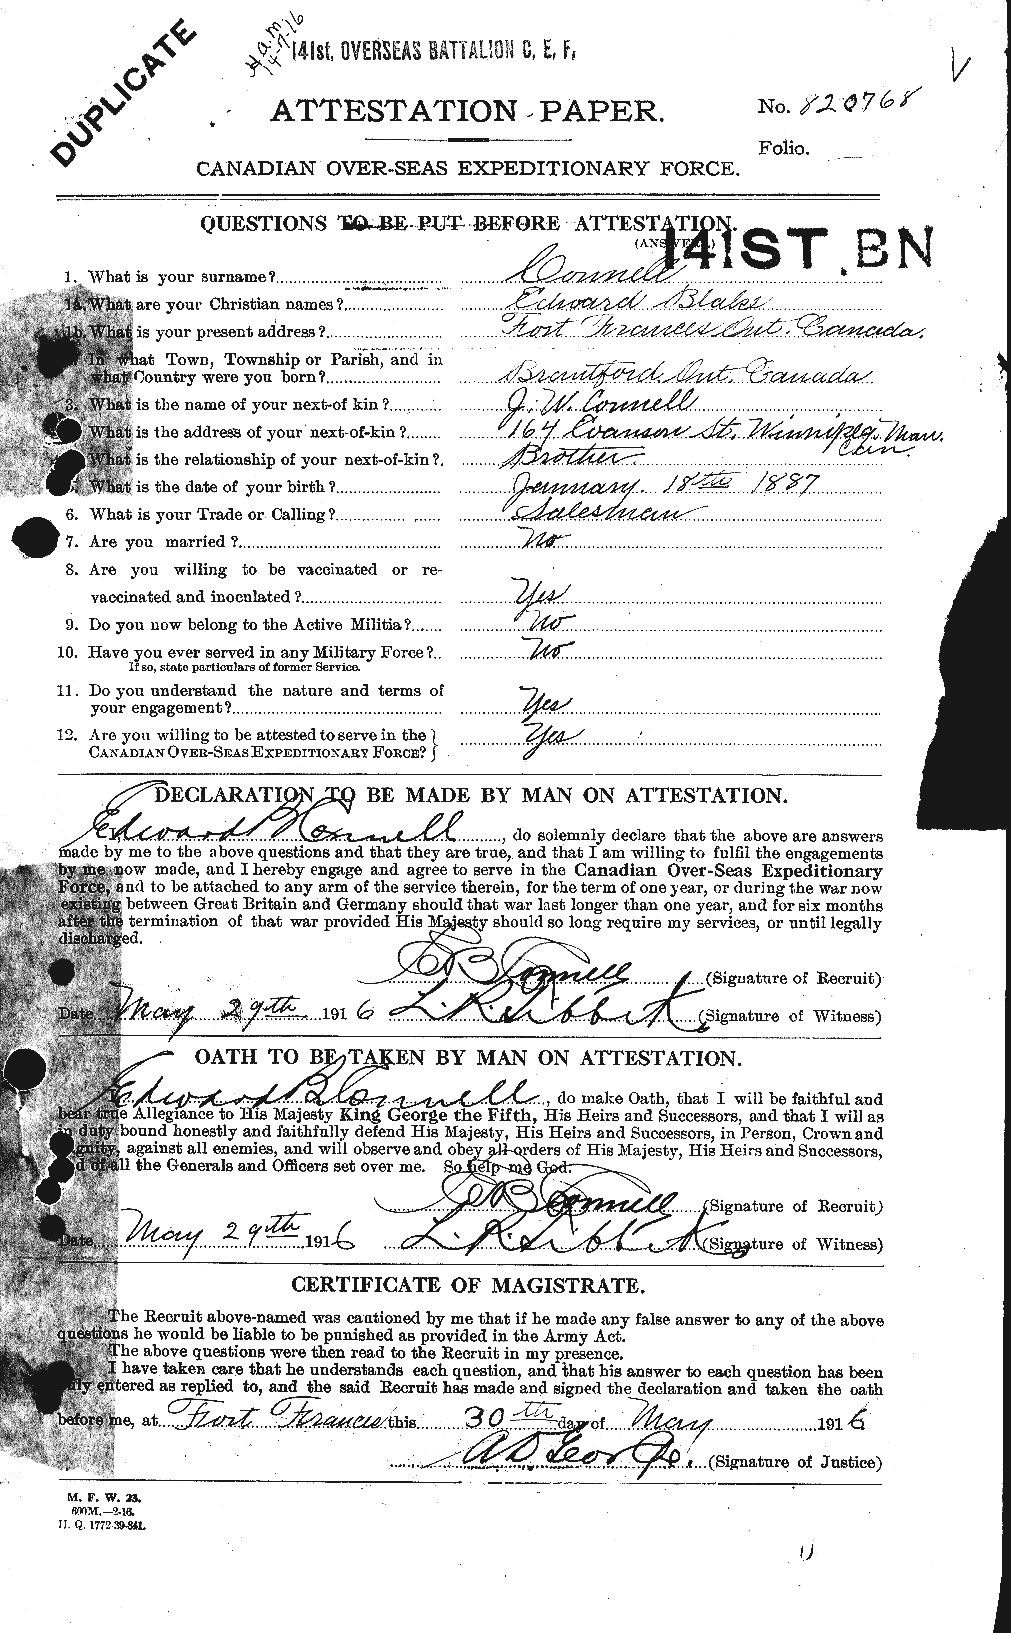 Dossiers du Personnel de la Première Guerre mondiale - CEC 069651a